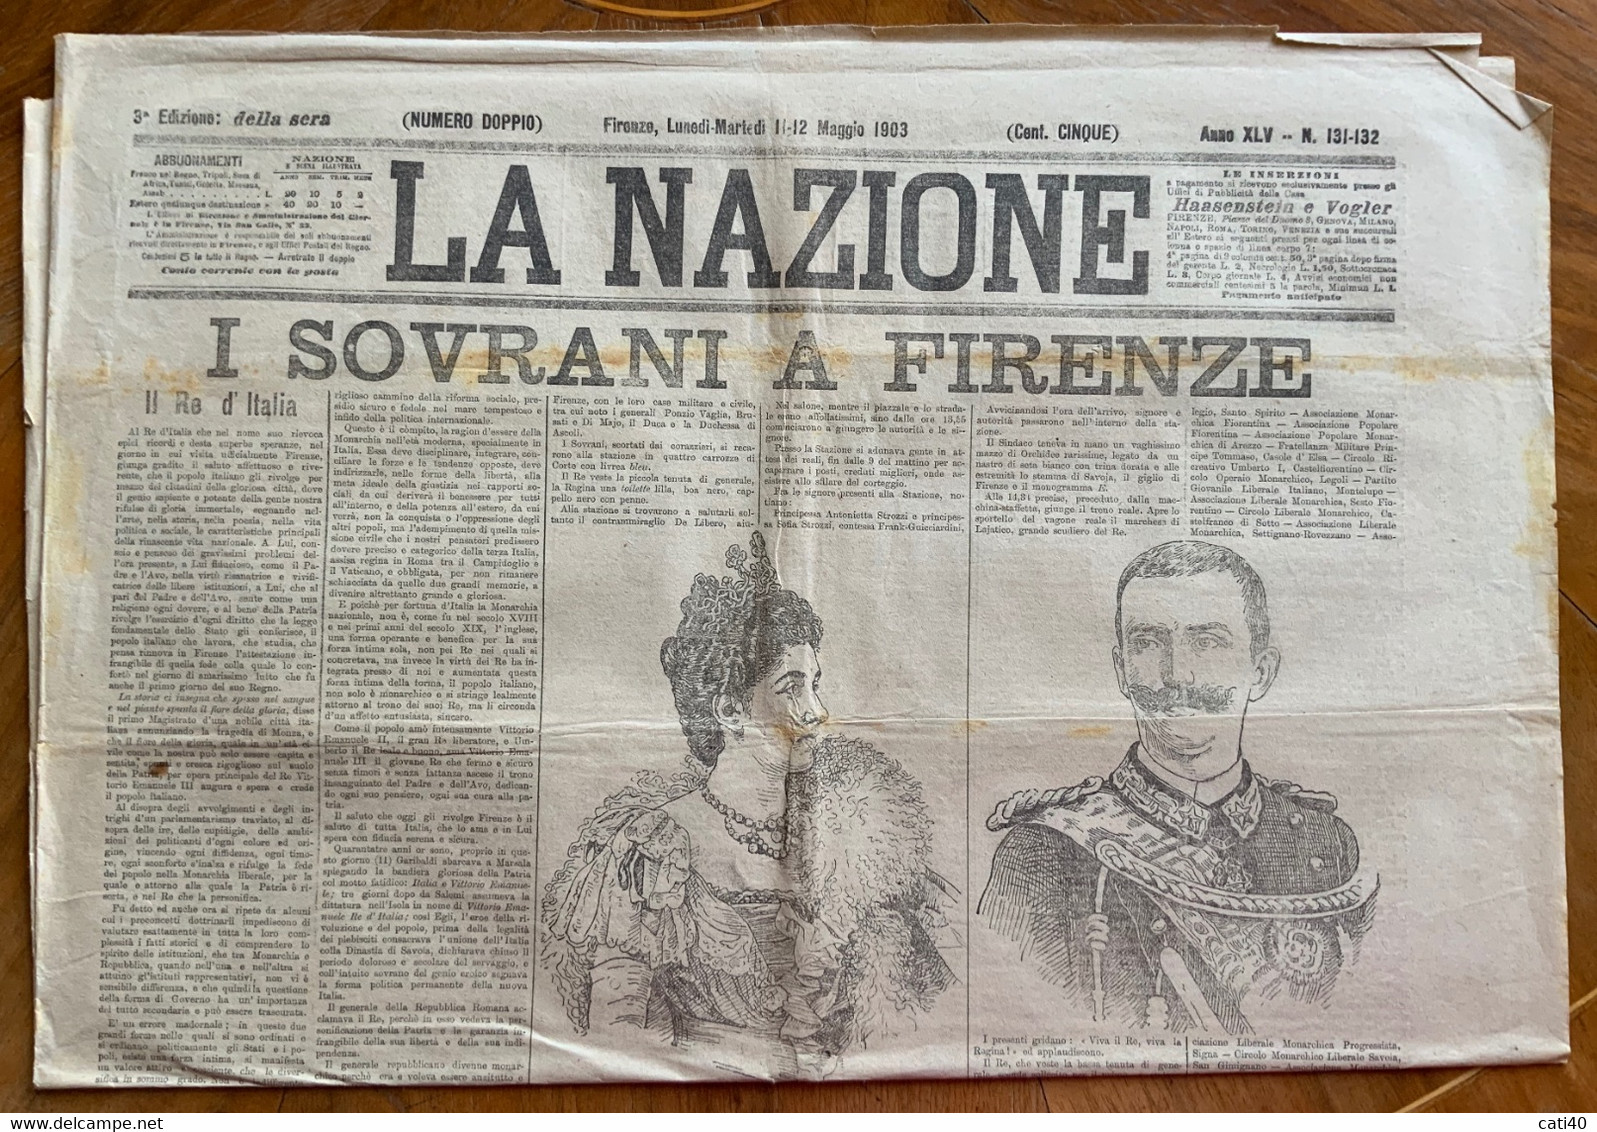 GIORNALE - LA NAZIONE Del 11.12 MAGGIO 1903 - I SOVRANI A FIRENZE - EDIZIONE SPECIALE CON RARA PUBBLICITA' D'EPOCA - Erstauflagen